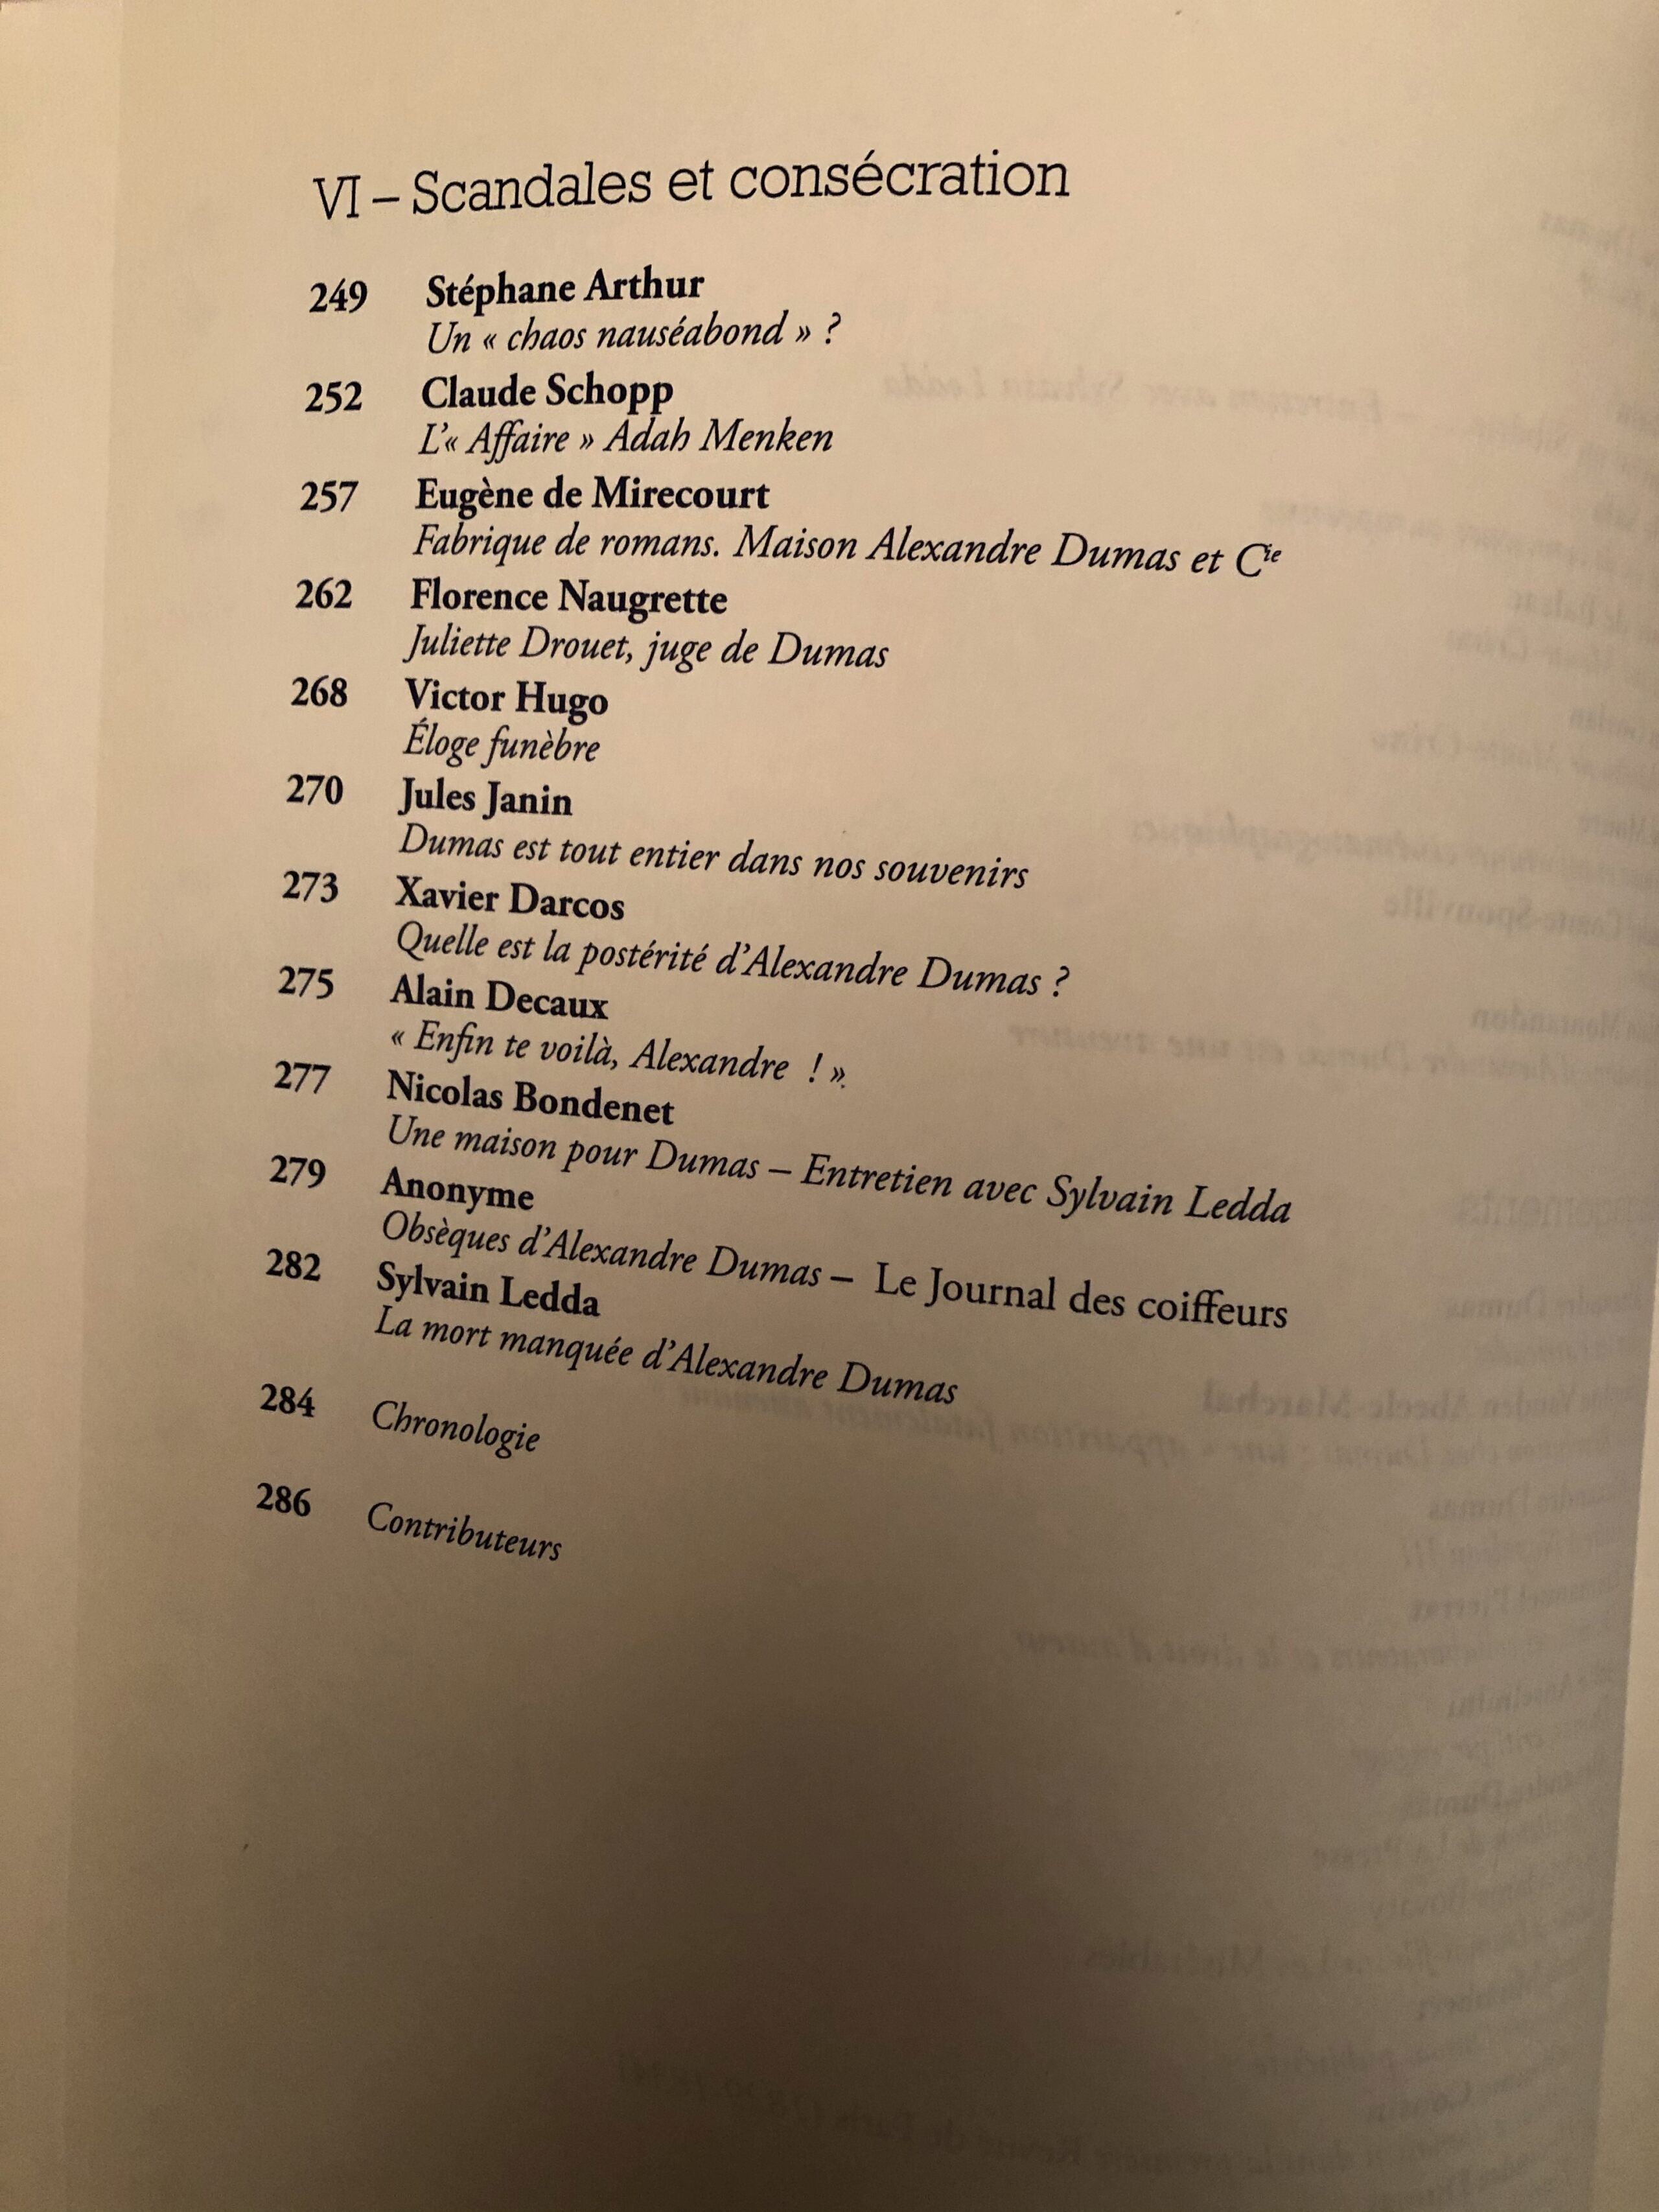 Alexandre Dumas : infos diverses - Page 5 Lherne12